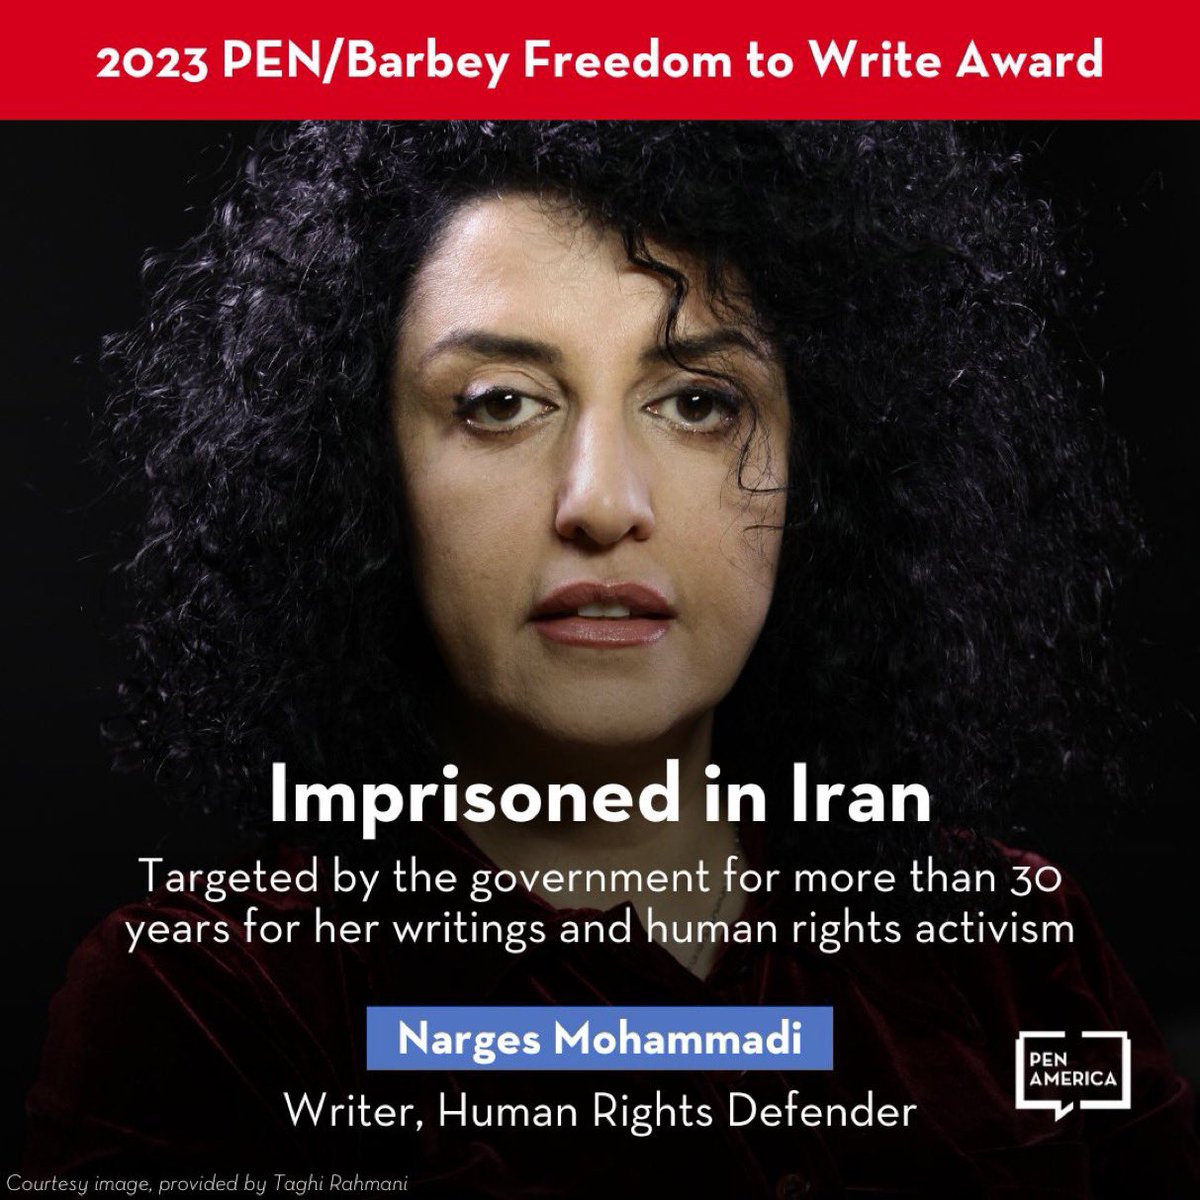 #Iran:
De Iraanse schrijver, journalist & mensenrechtenactivist #NargesMohammadi wordt geëerd tijdens het PEN America Literary Gala v deze week.
Marges, die momenteel gevangen zit wegens 'het verspreiden van propaganda', ontvangt d PEN #FreedomToWrite Award 2023
#WomanLifeFreedom